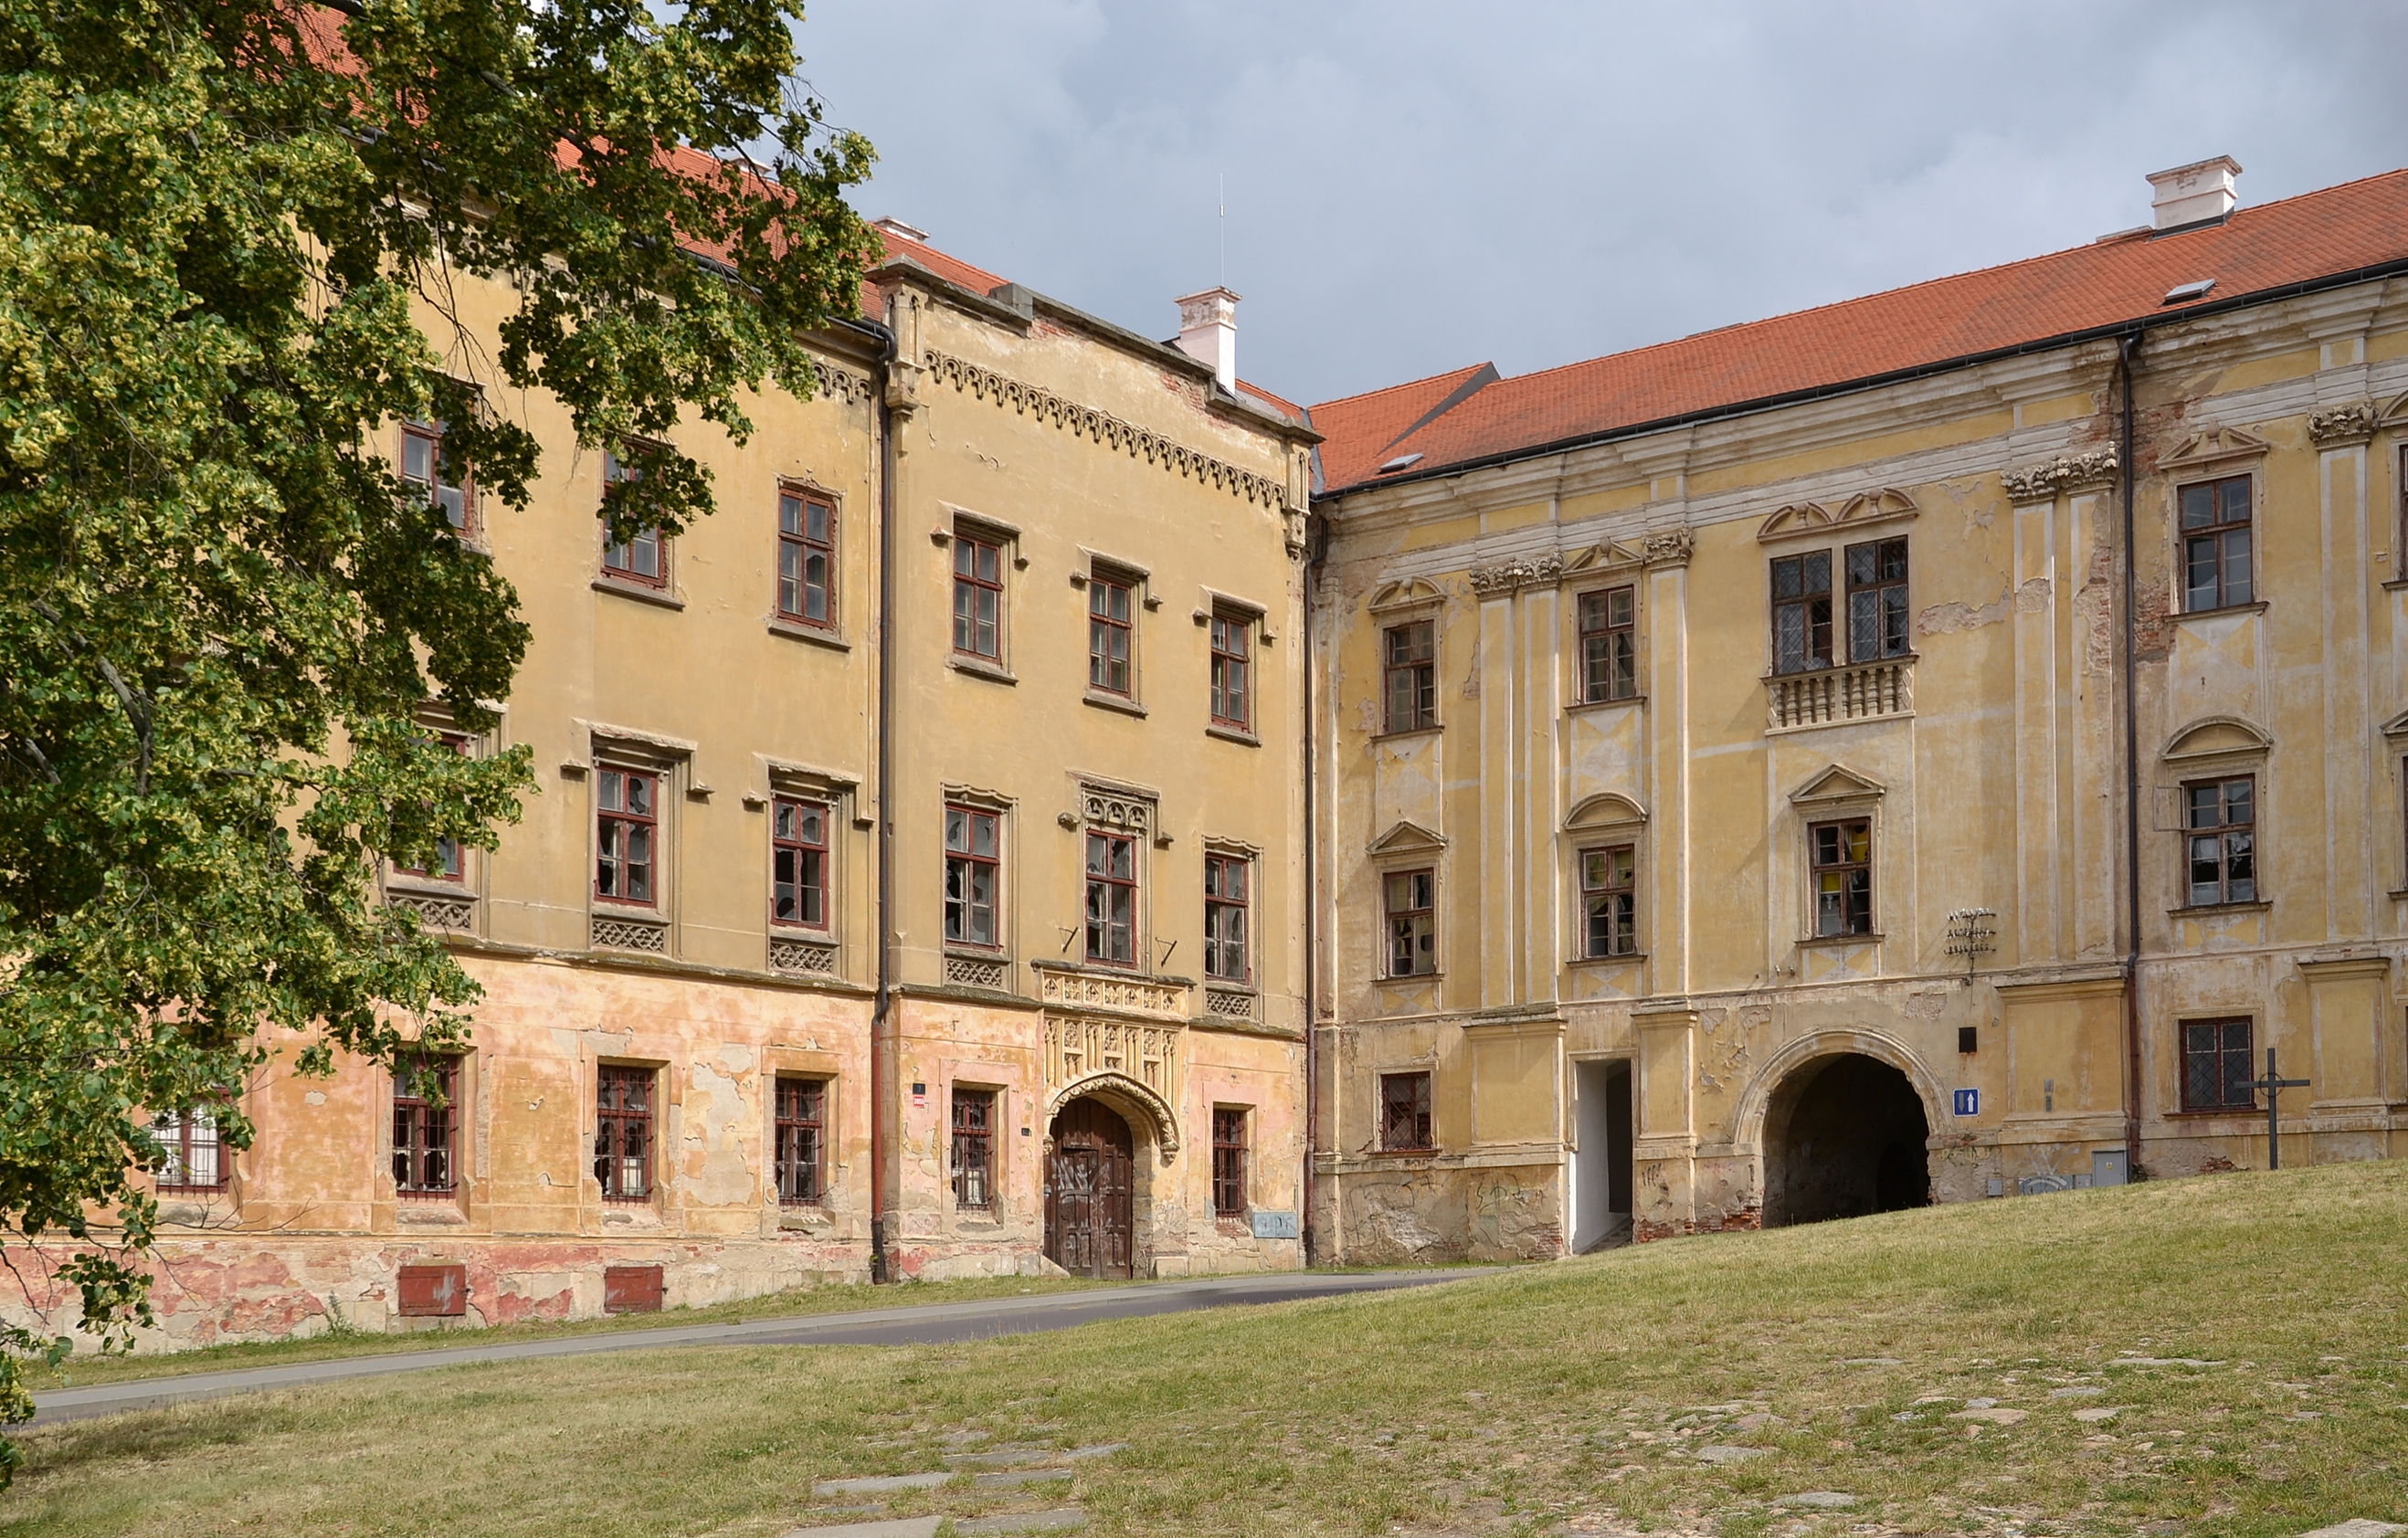 Loucký klášter, Znojmo (Klosterbruck, Znaim)